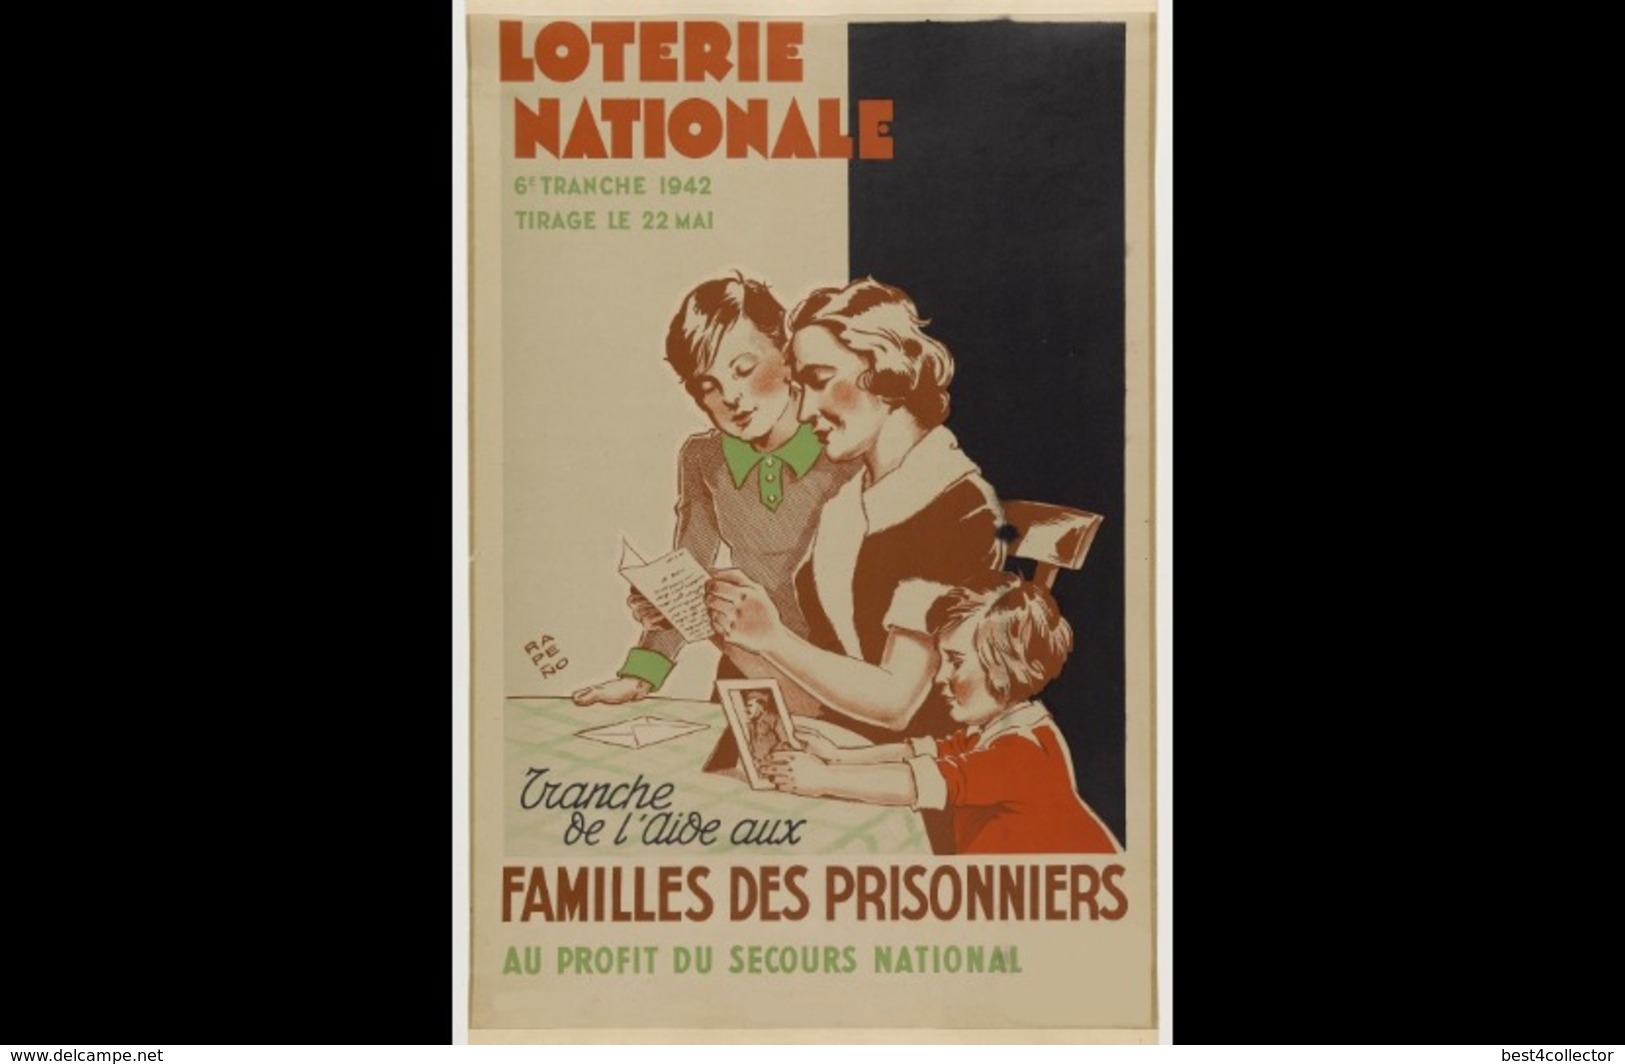 @@@ MAGNET - Loterie Nationale... Tranche De L'aide Aux Familles Des Prisonniers Au Profit Du Secours National - Advertising